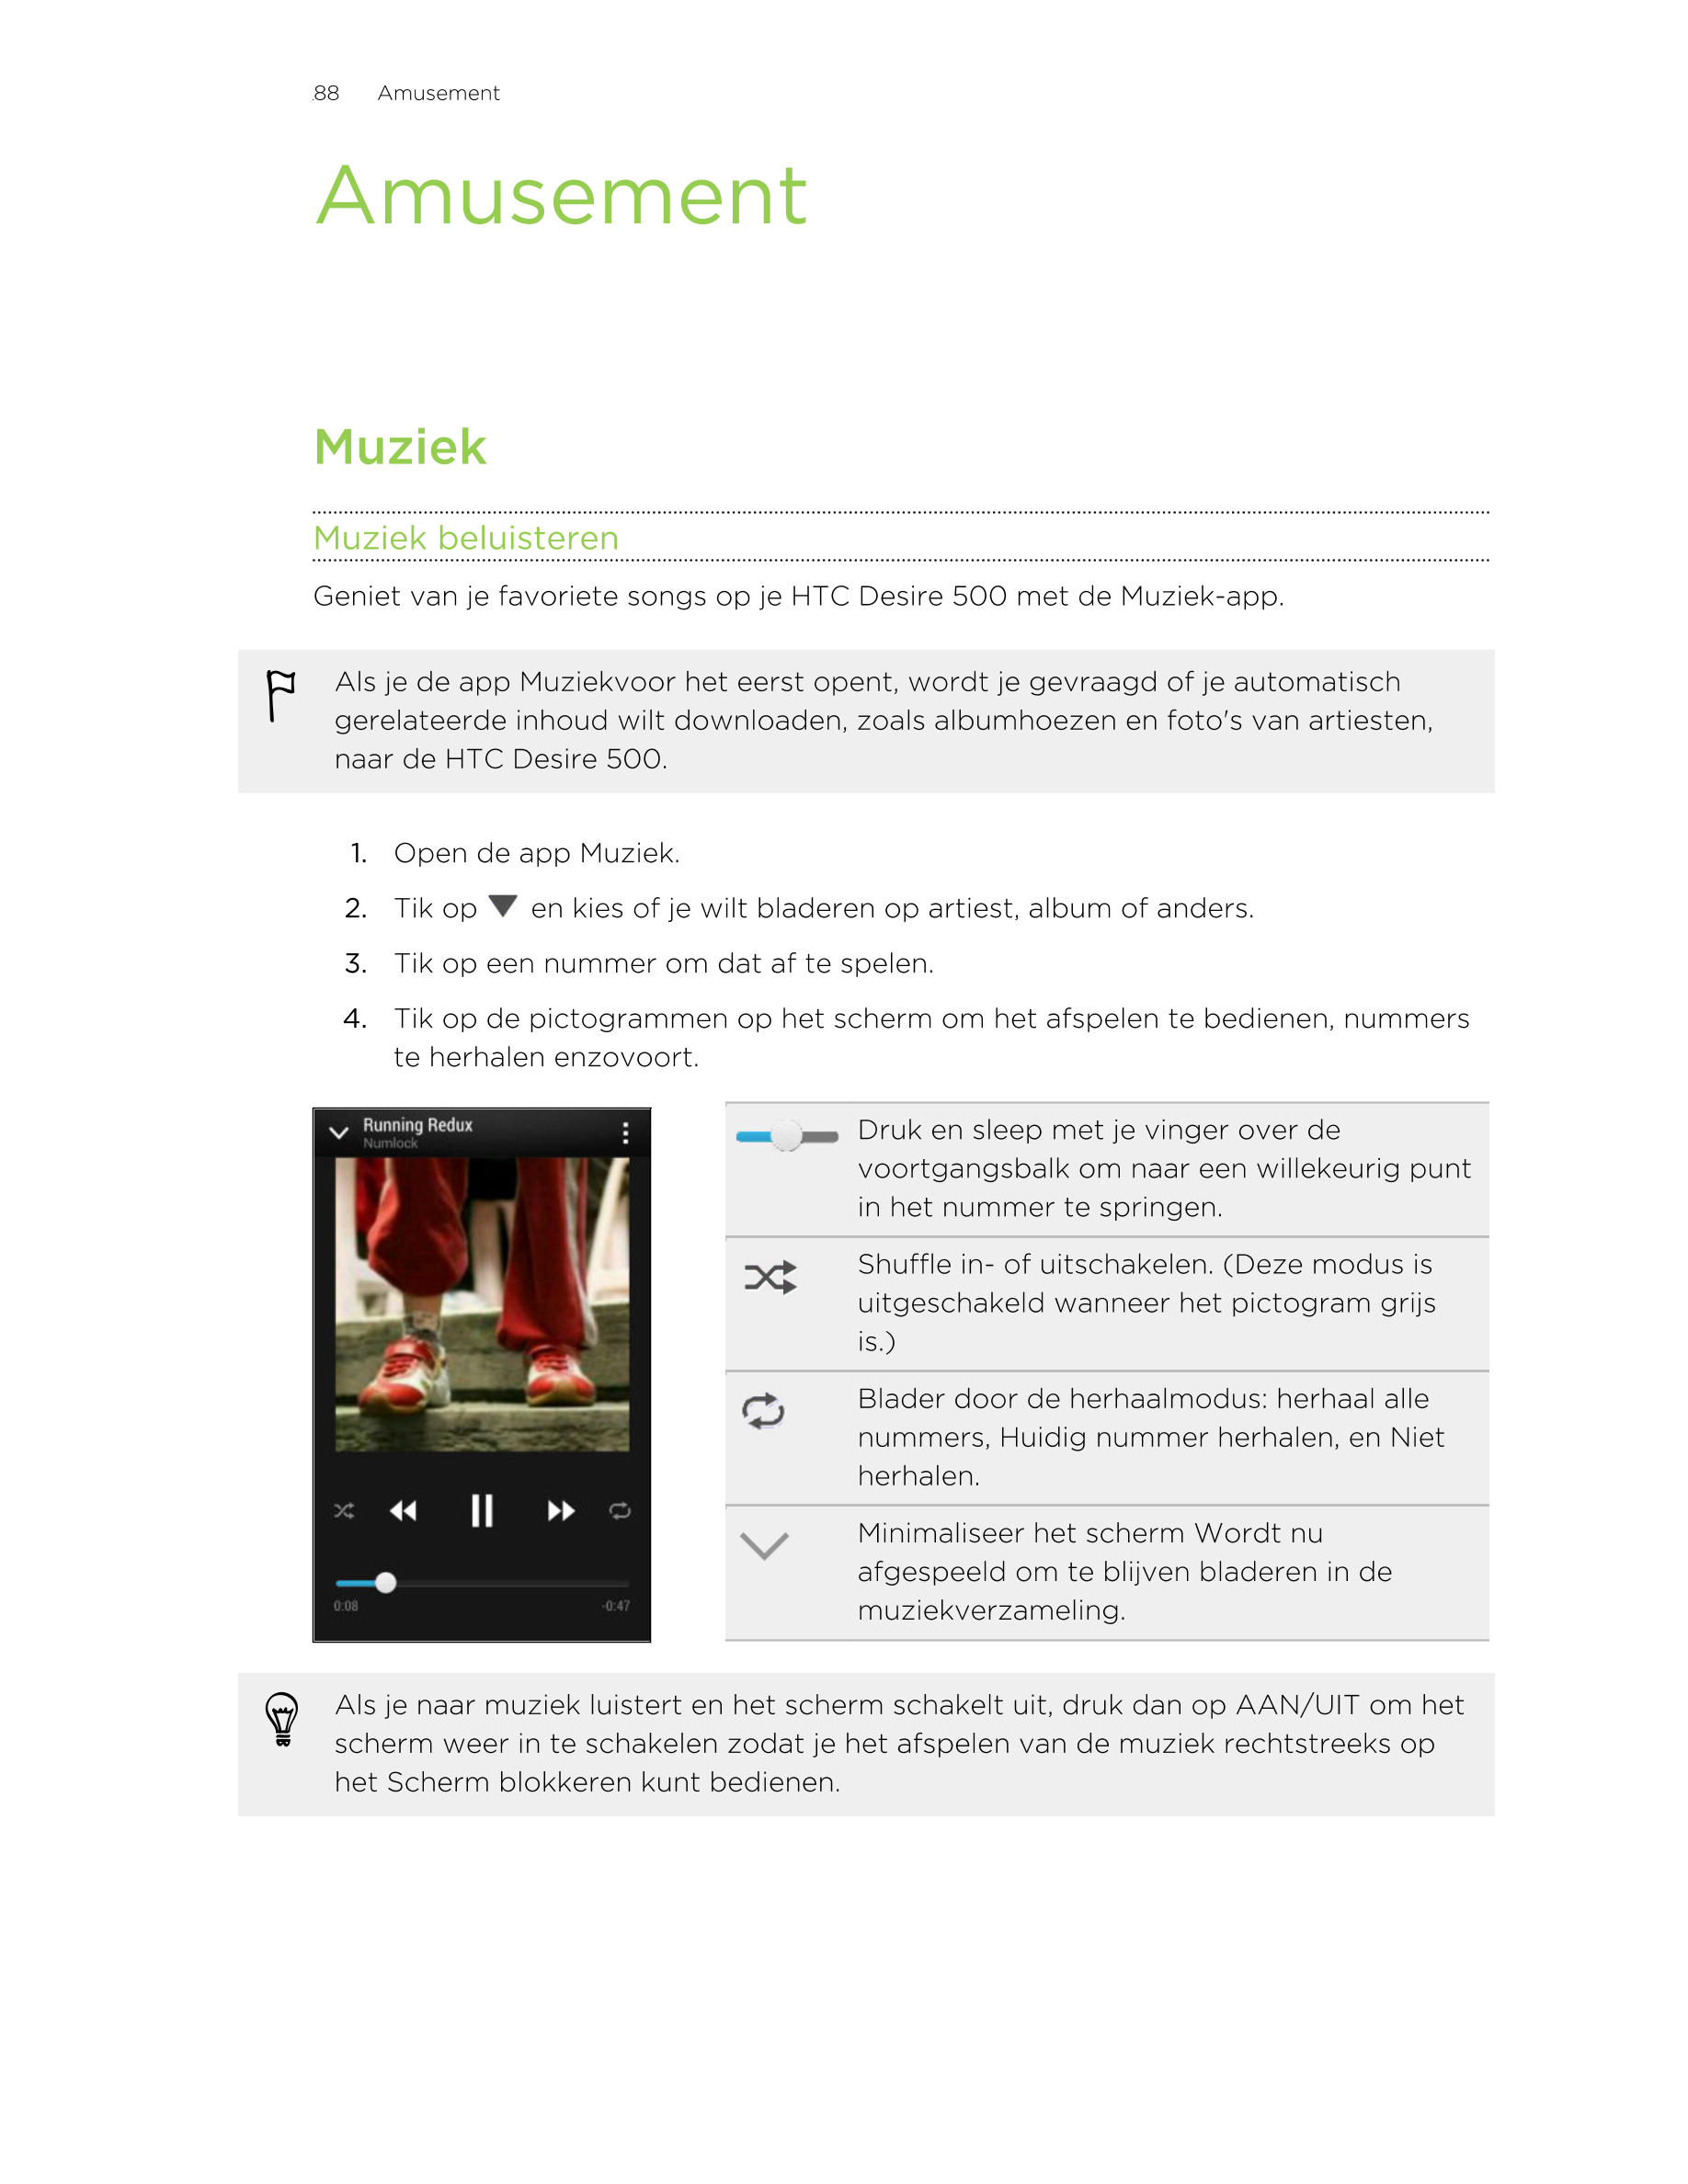 88      Amusement
Amusement
Muziek
Muziek beluisteren
Geniet van je favoriete songs op je HTC Desire 500 met de Muziek-app.
Als 